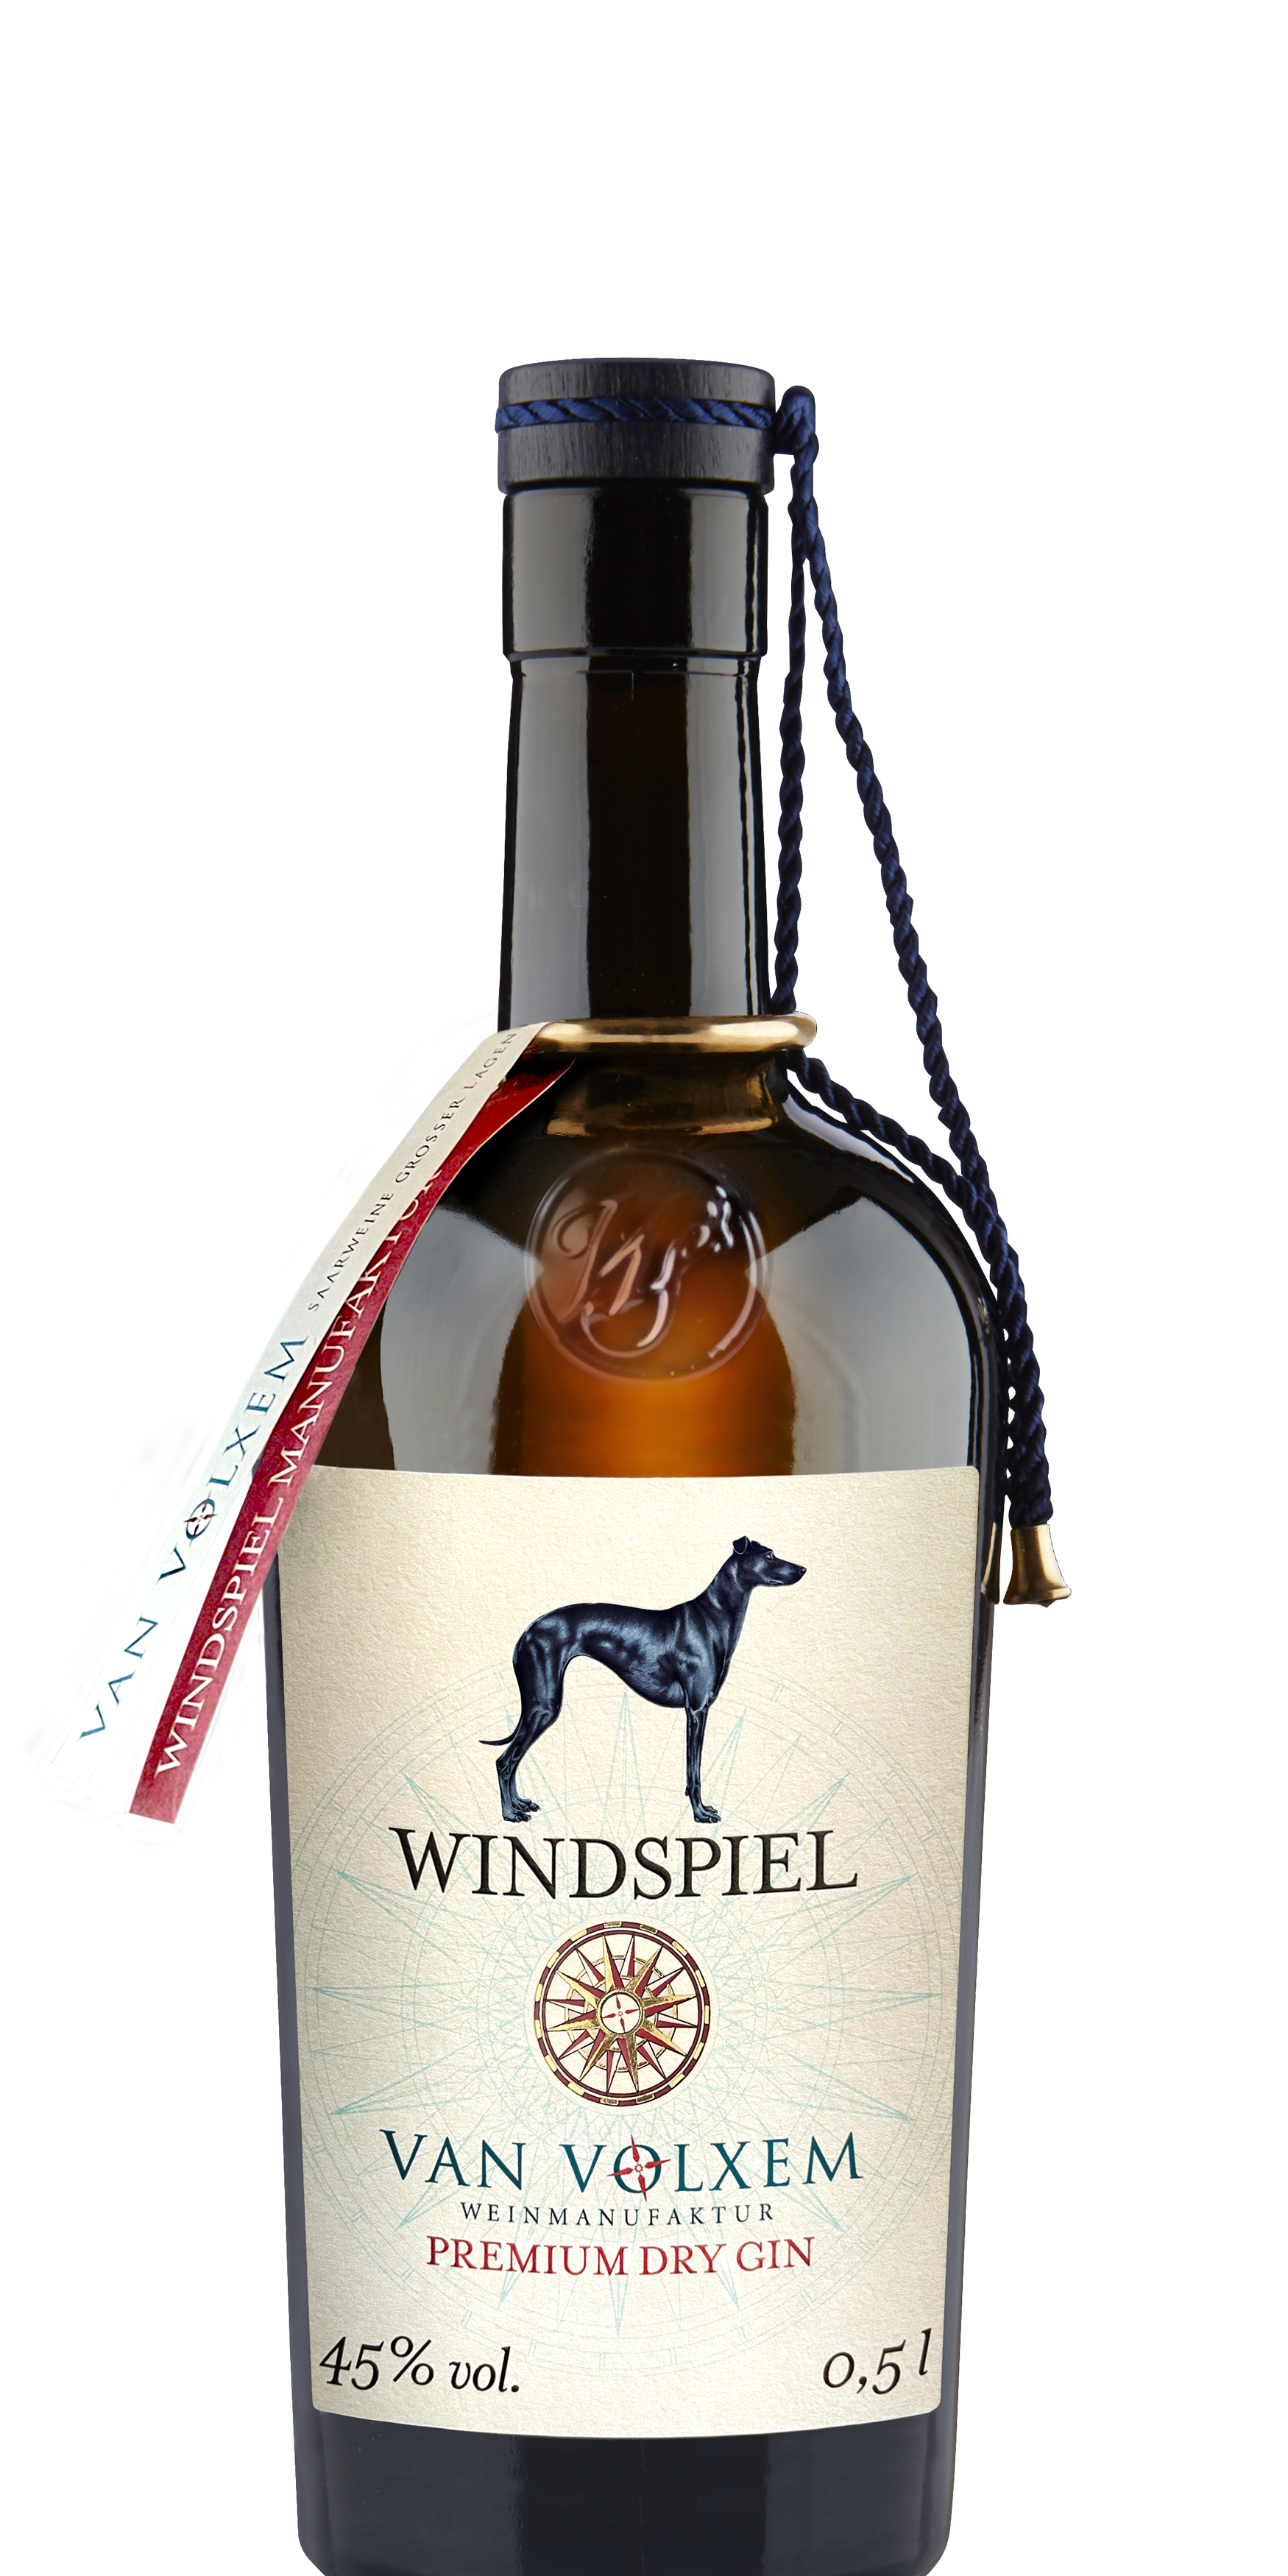 Windspiel-Premium-Dry-Gin-van-volxem-500ml.png